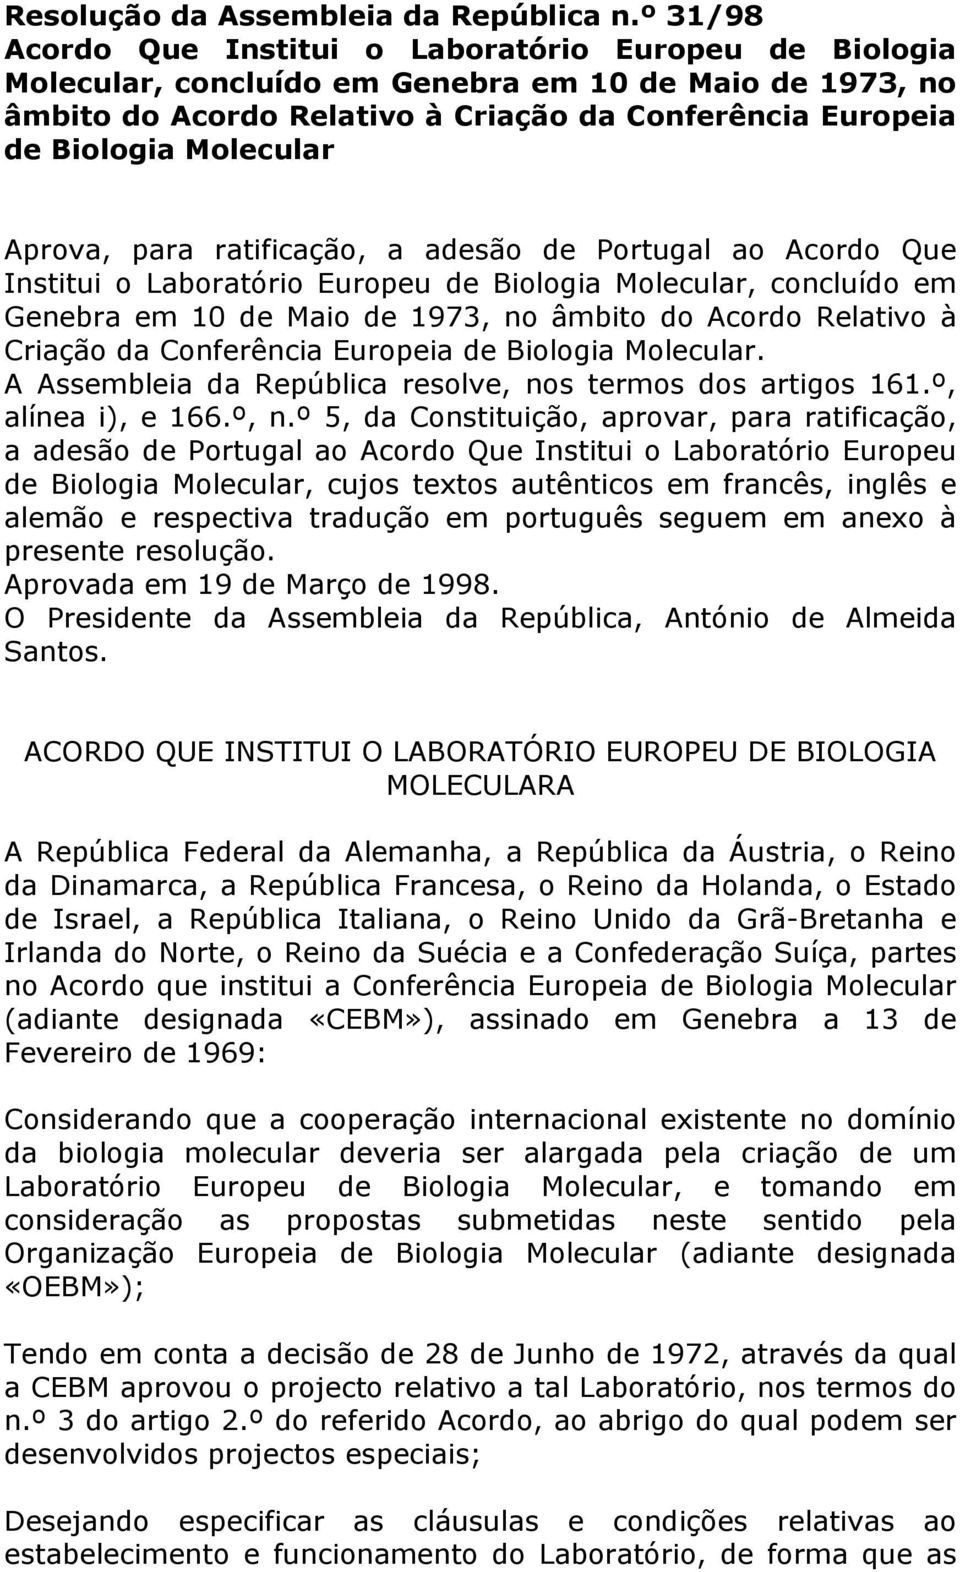 Molecular Aprova, para ratificação, a adesão de Portugal ao Acordo Que Institui o Laboratório Europeu de Biologia Molecular, concluído em Genebra em 10 de Maio de 1973, no âmbito do Acordo Relativo à